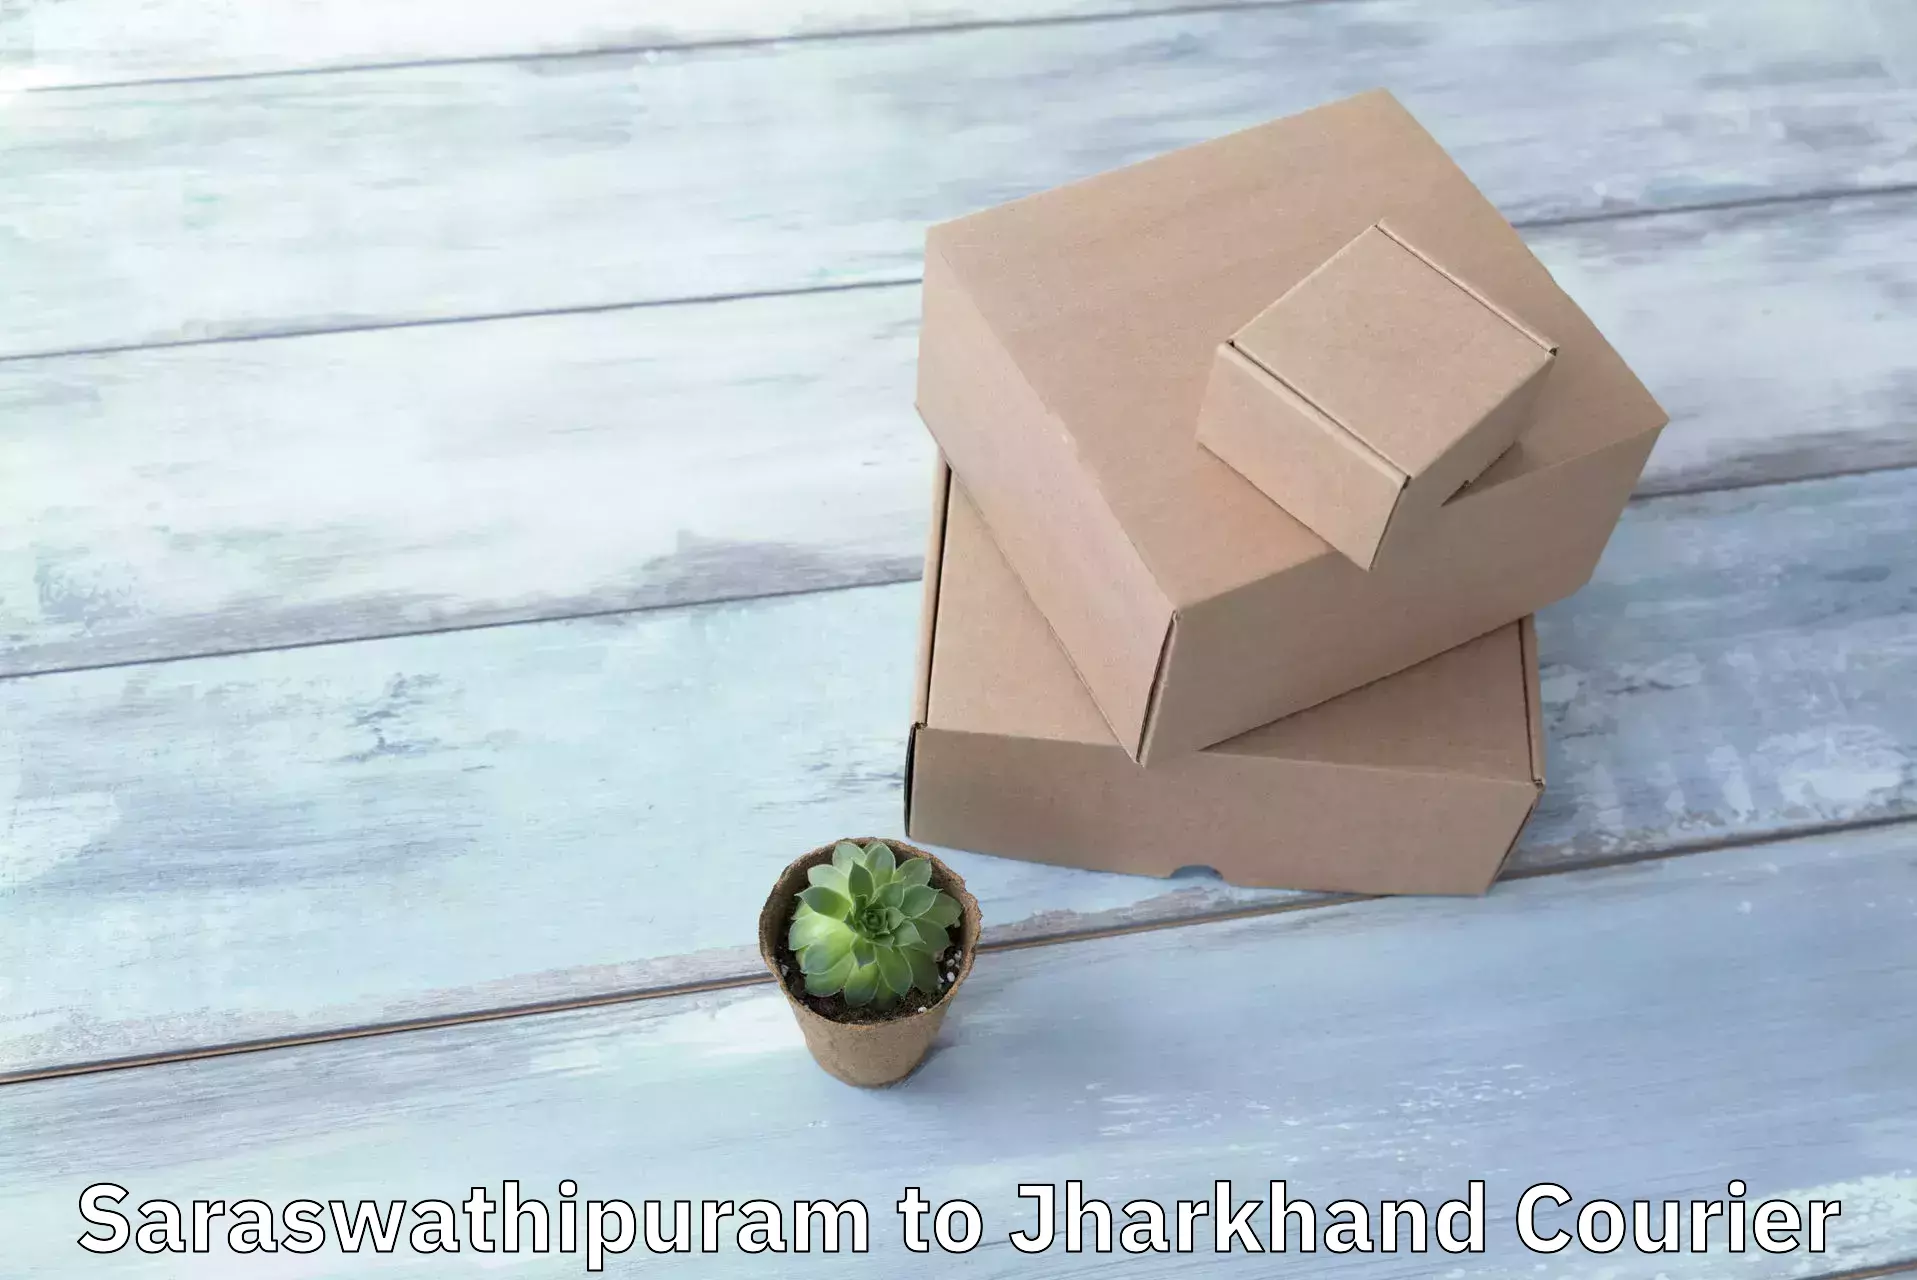 E-commerce fulfillment in Saraswathipuram to Jharkhand